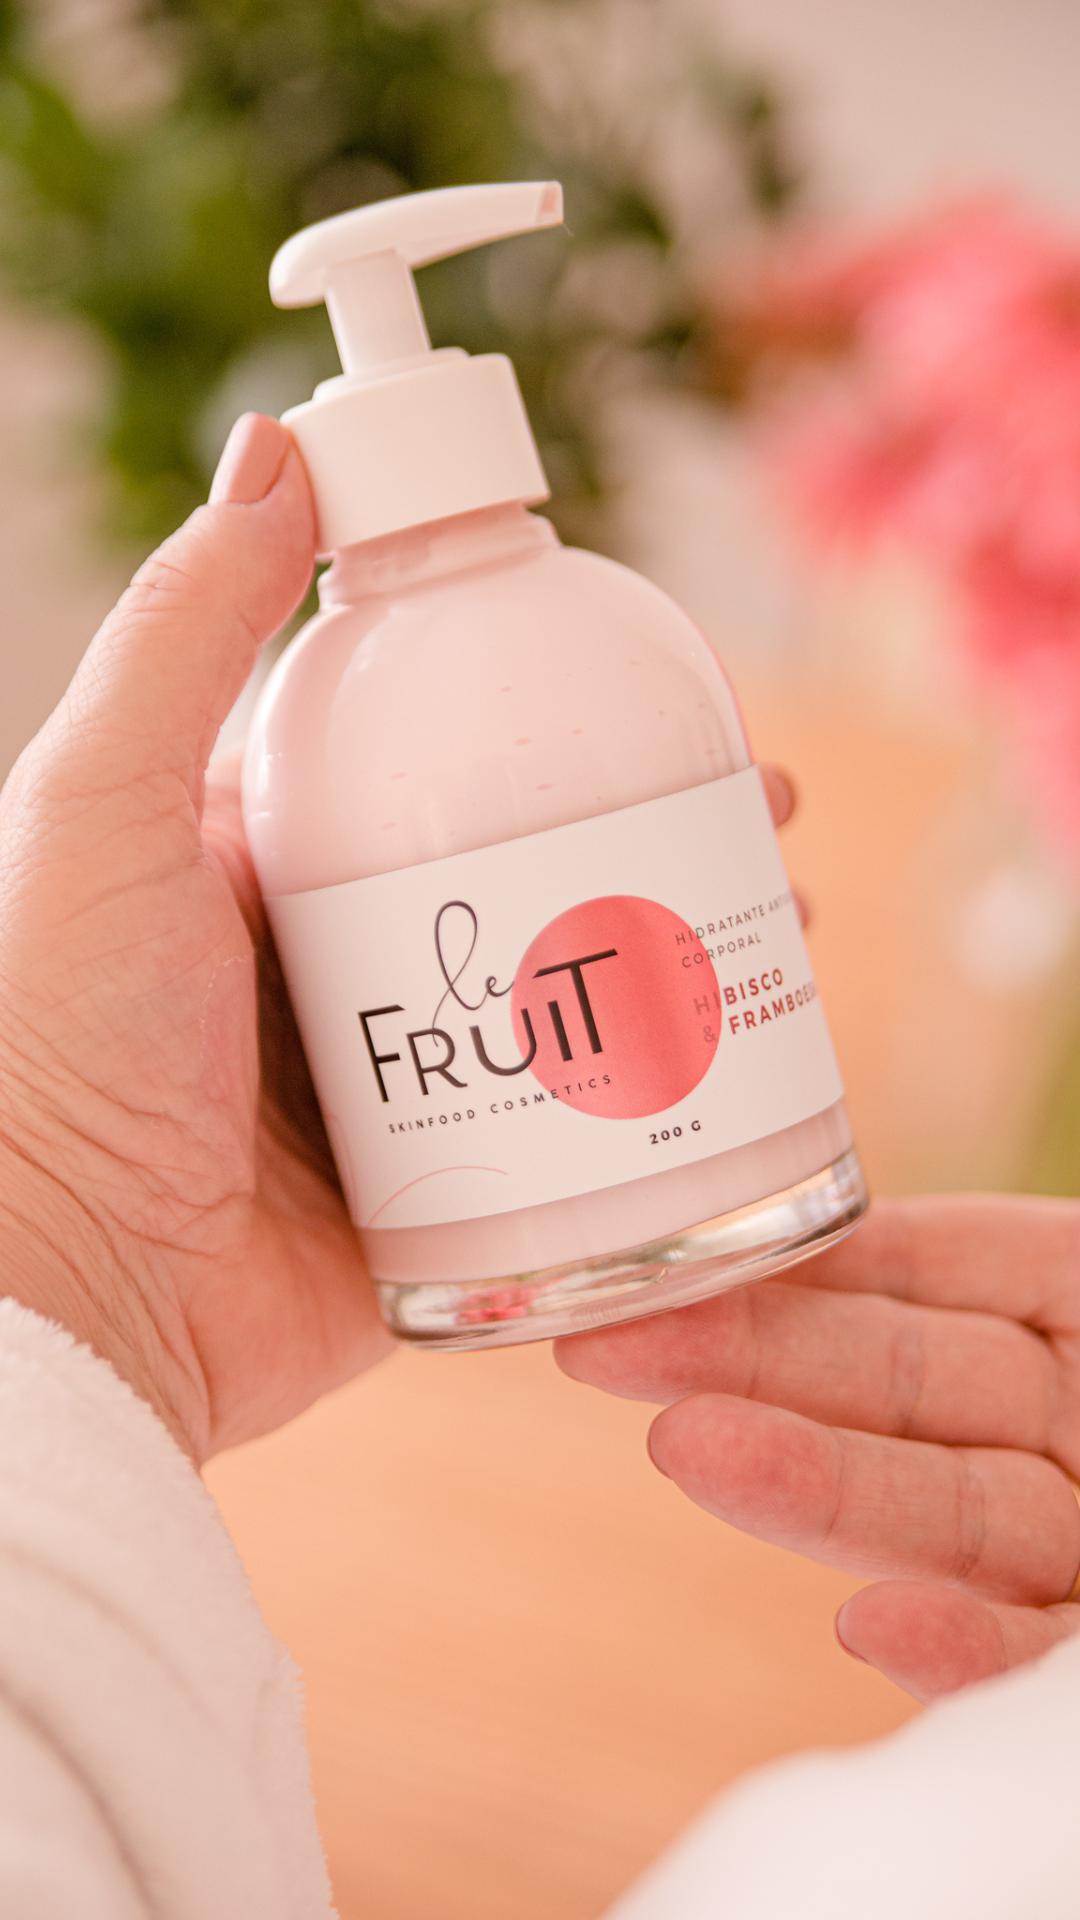 A imagem retrata duas mãos de uma mulher de pele clara segurando um frasco de vidro contendo hidratante da marca Le Fruit, cujo líquido rosa é claramente visível.